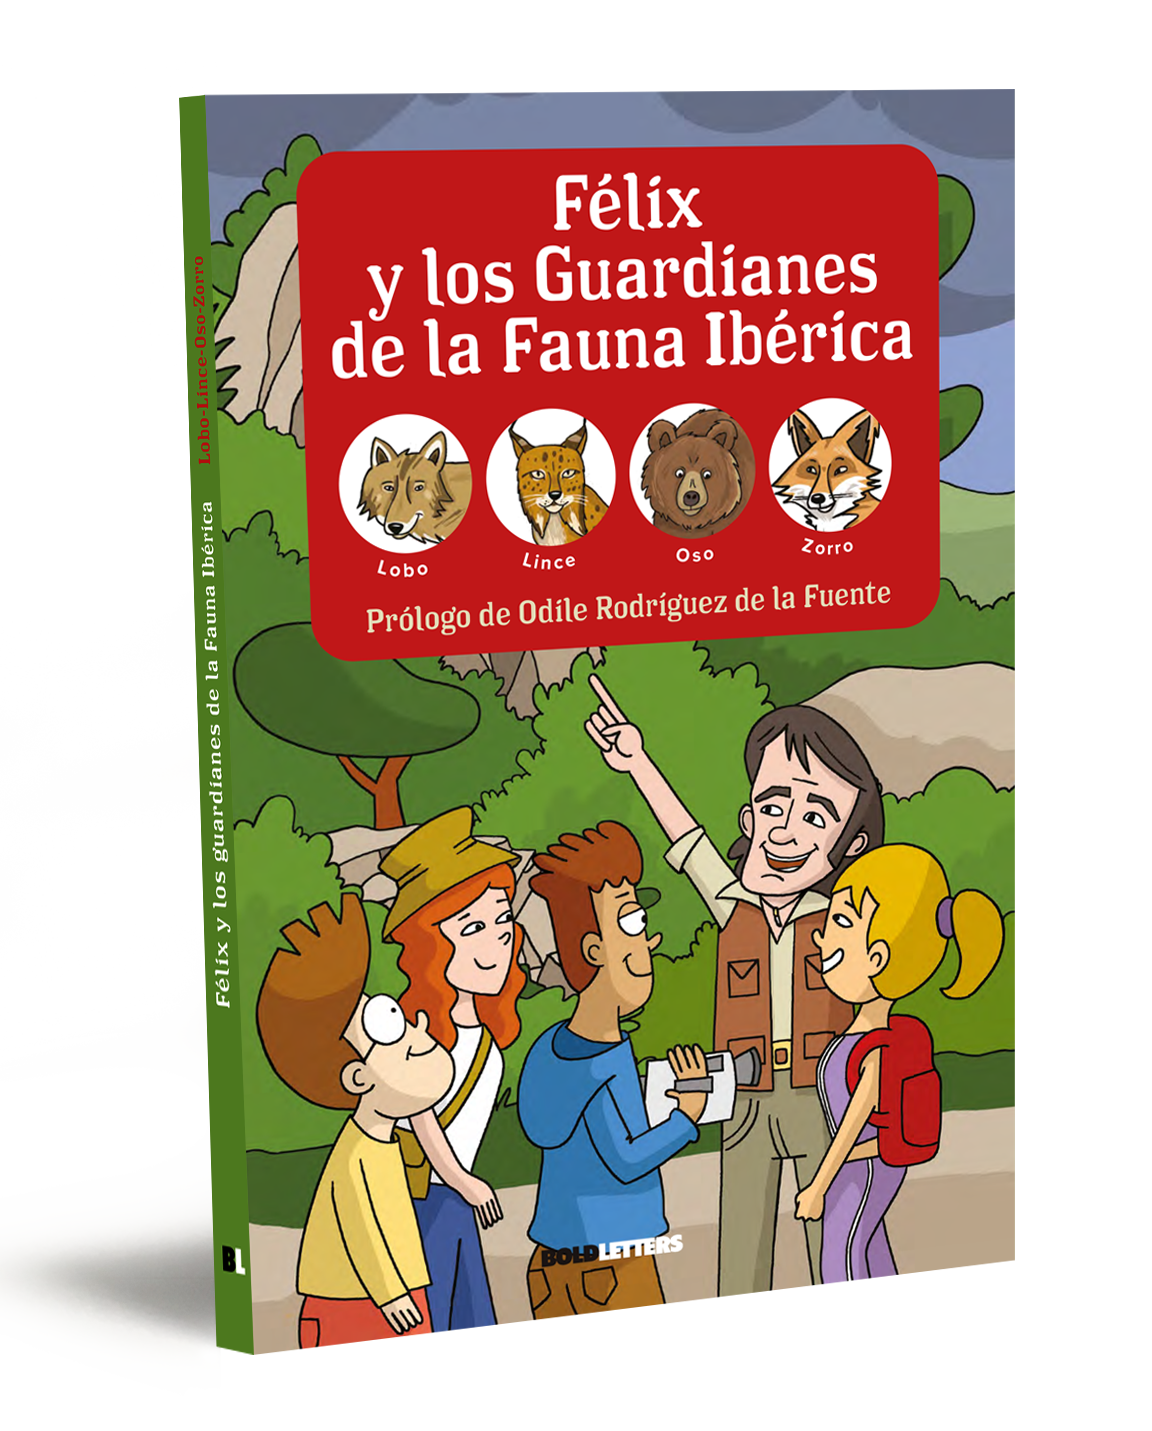 Félix y los Guardianes de la Fauna Ibérica